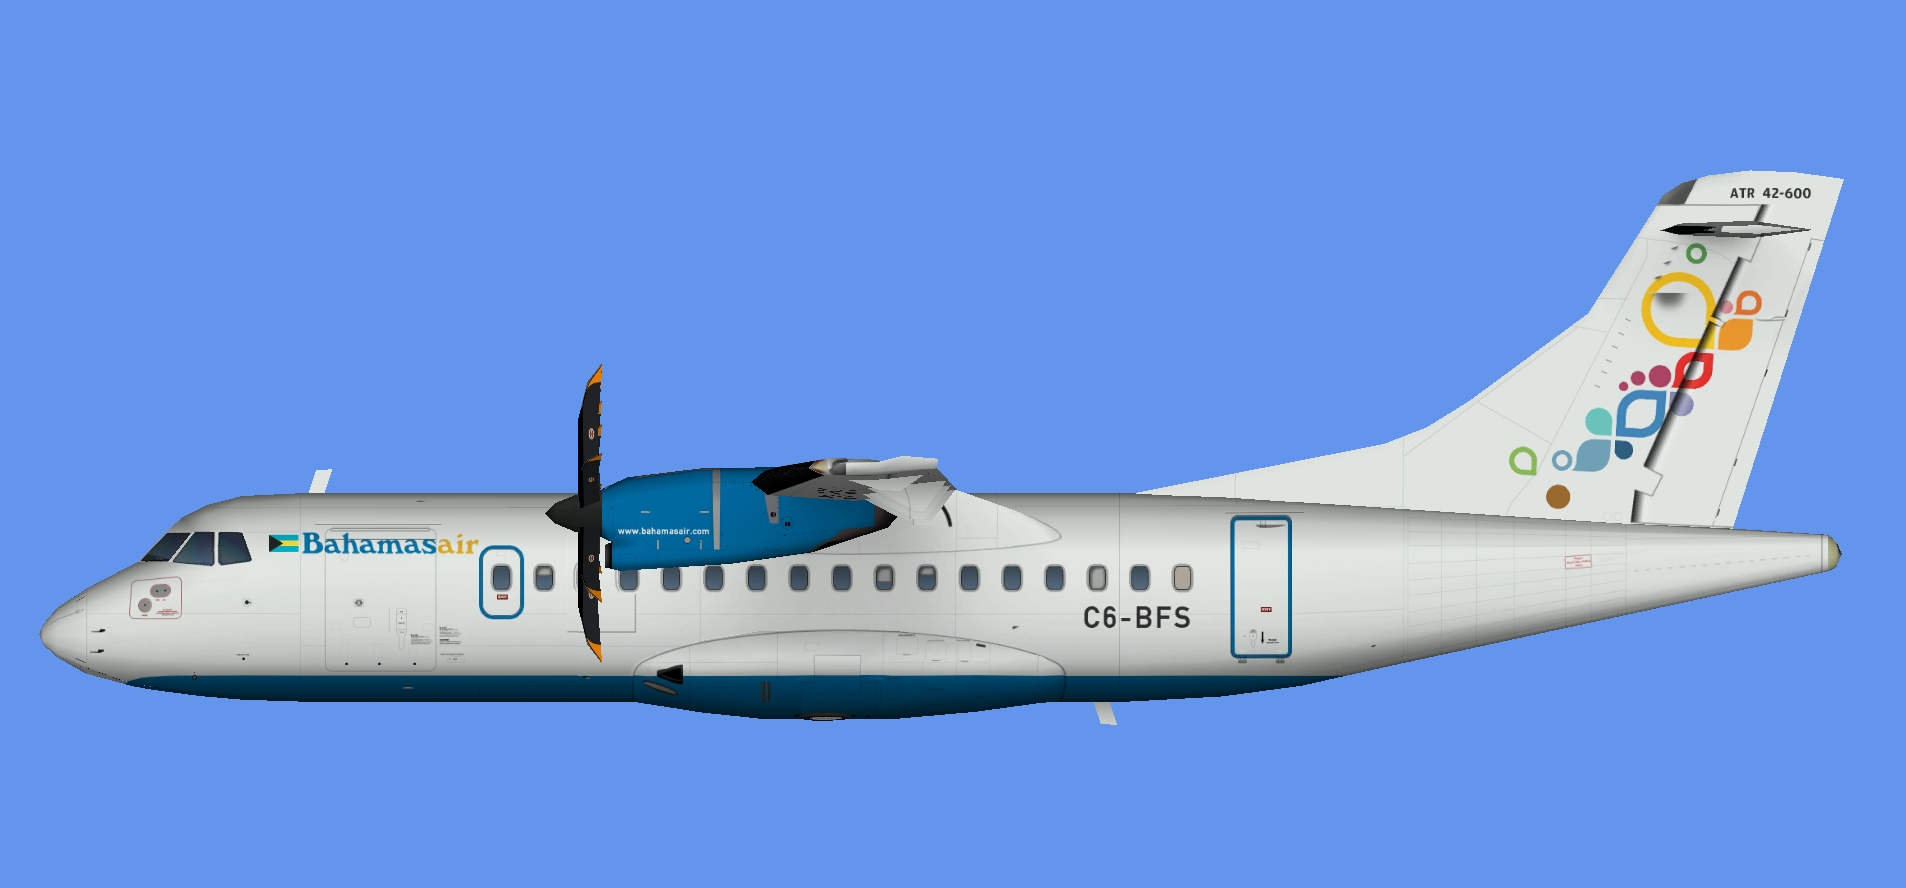 Bahamasair ATR 42-600